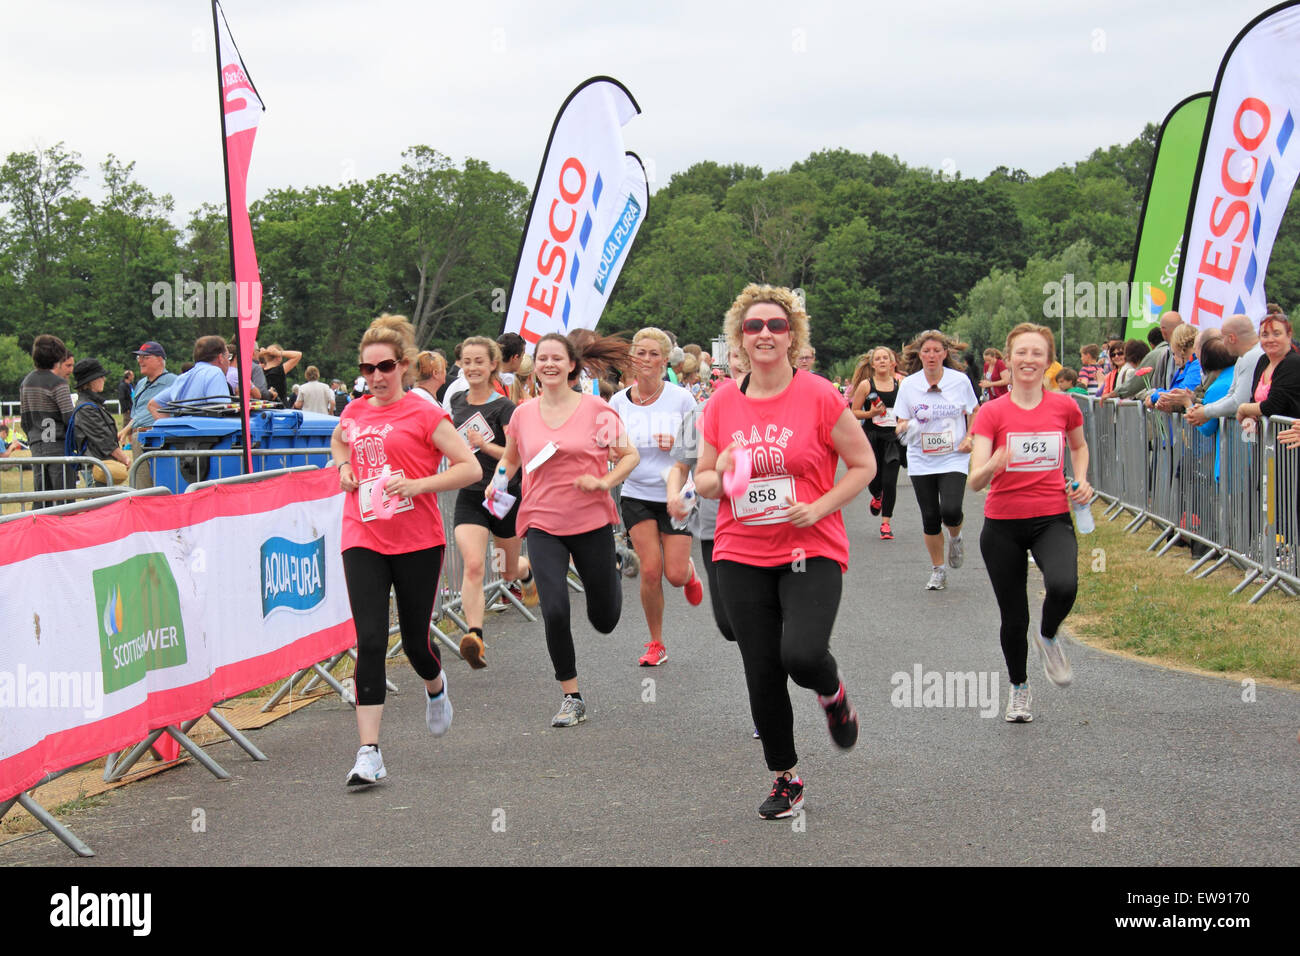 Nähert sich der Ziellinie am "Race for LIfe" nur für Frauen Spendenaktionen Laufveranstaltung für Cancer Research UK. 20. Juni 2015. Kempton Park Rennbahn, Staines Road East, Sunbury am Thames, Middlesex, England, Großbritannien, Deutschland, UK, Europa. Bildnachweis: Ian Bottle / Alamy Live News Stockfoto